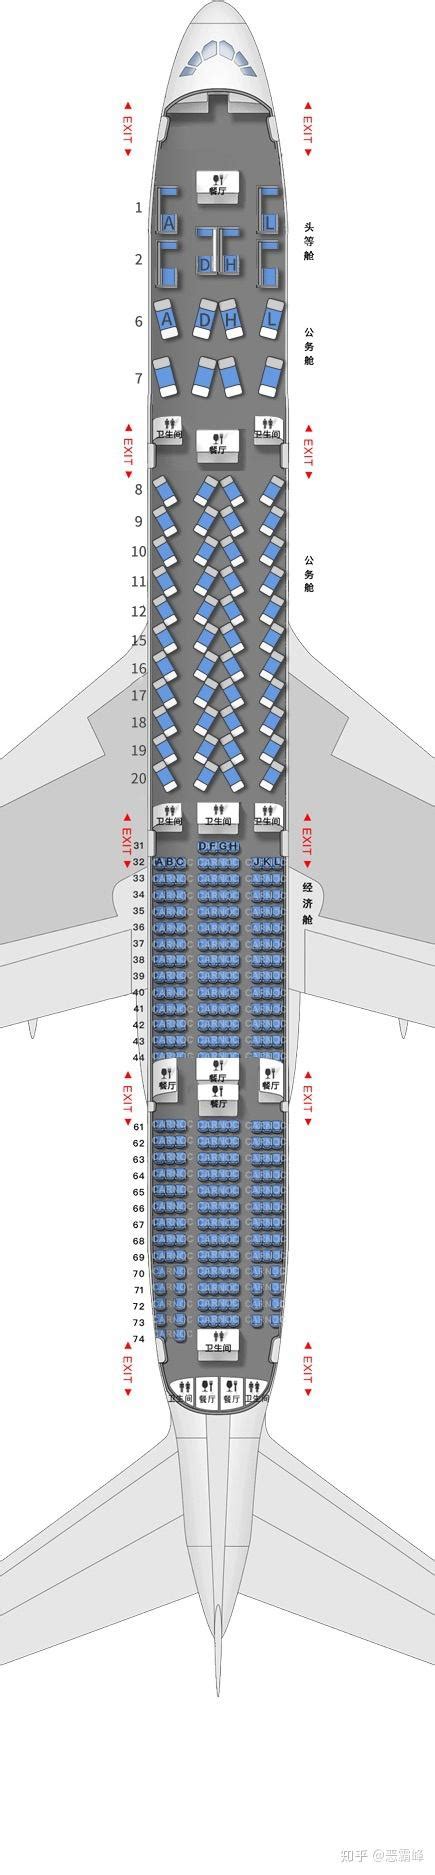 求海南航空738机型座位图，请问经济舱左边靠窗的座位号是多少？谢谢。 - 知乎